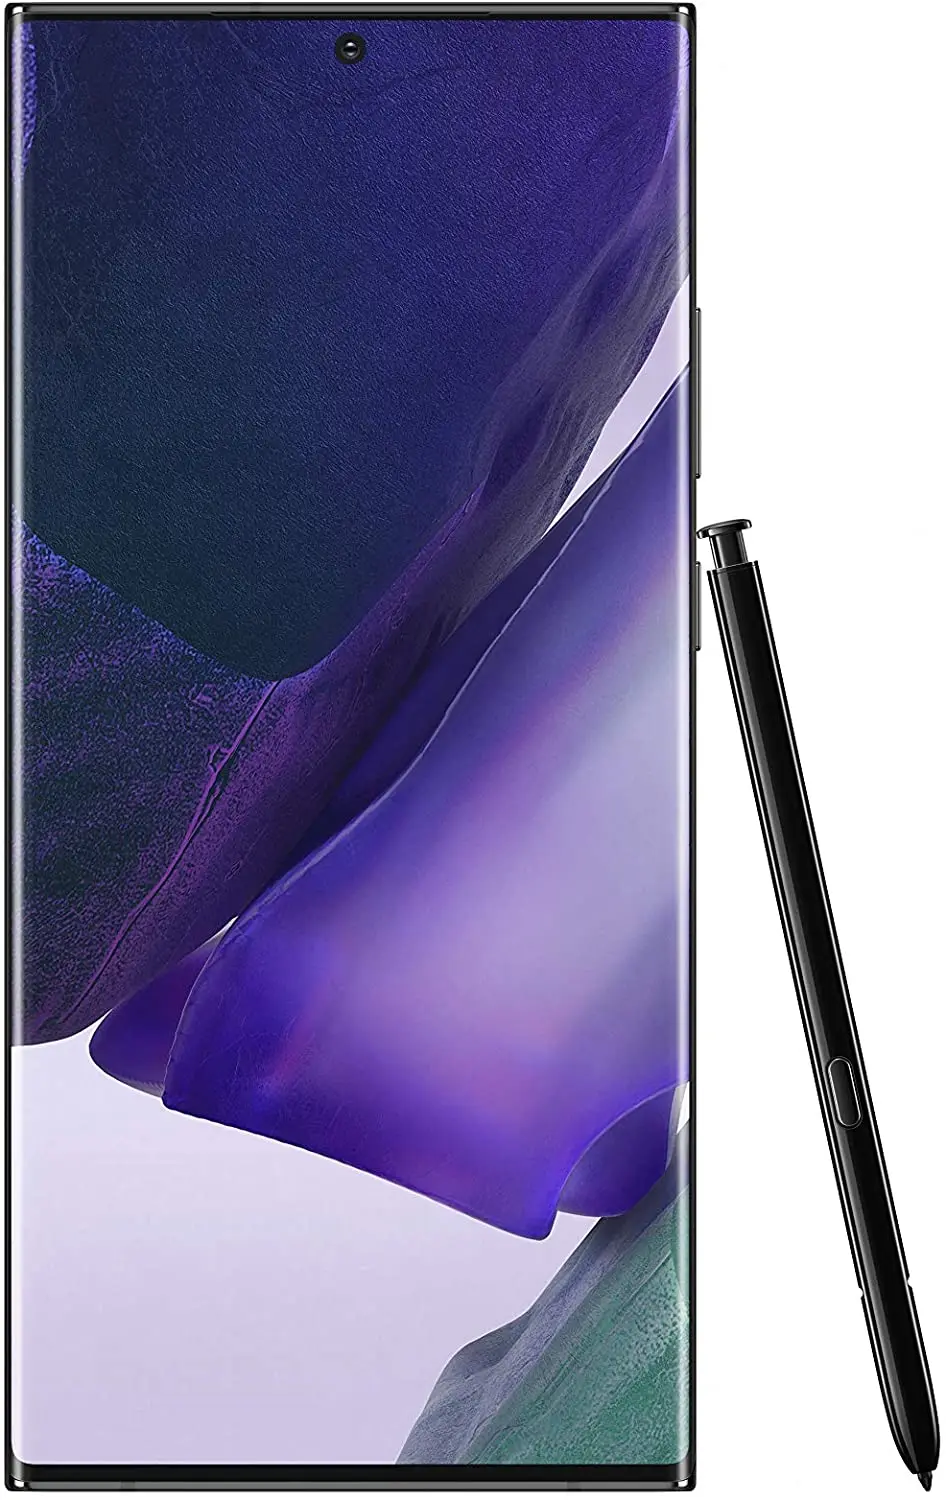 Samsung Galaxy Note20 Ultra Dual SIM, 256GB 8GB RAM 4G LTE - Mystic Black + Galaxy Buds Live - Mystic Black